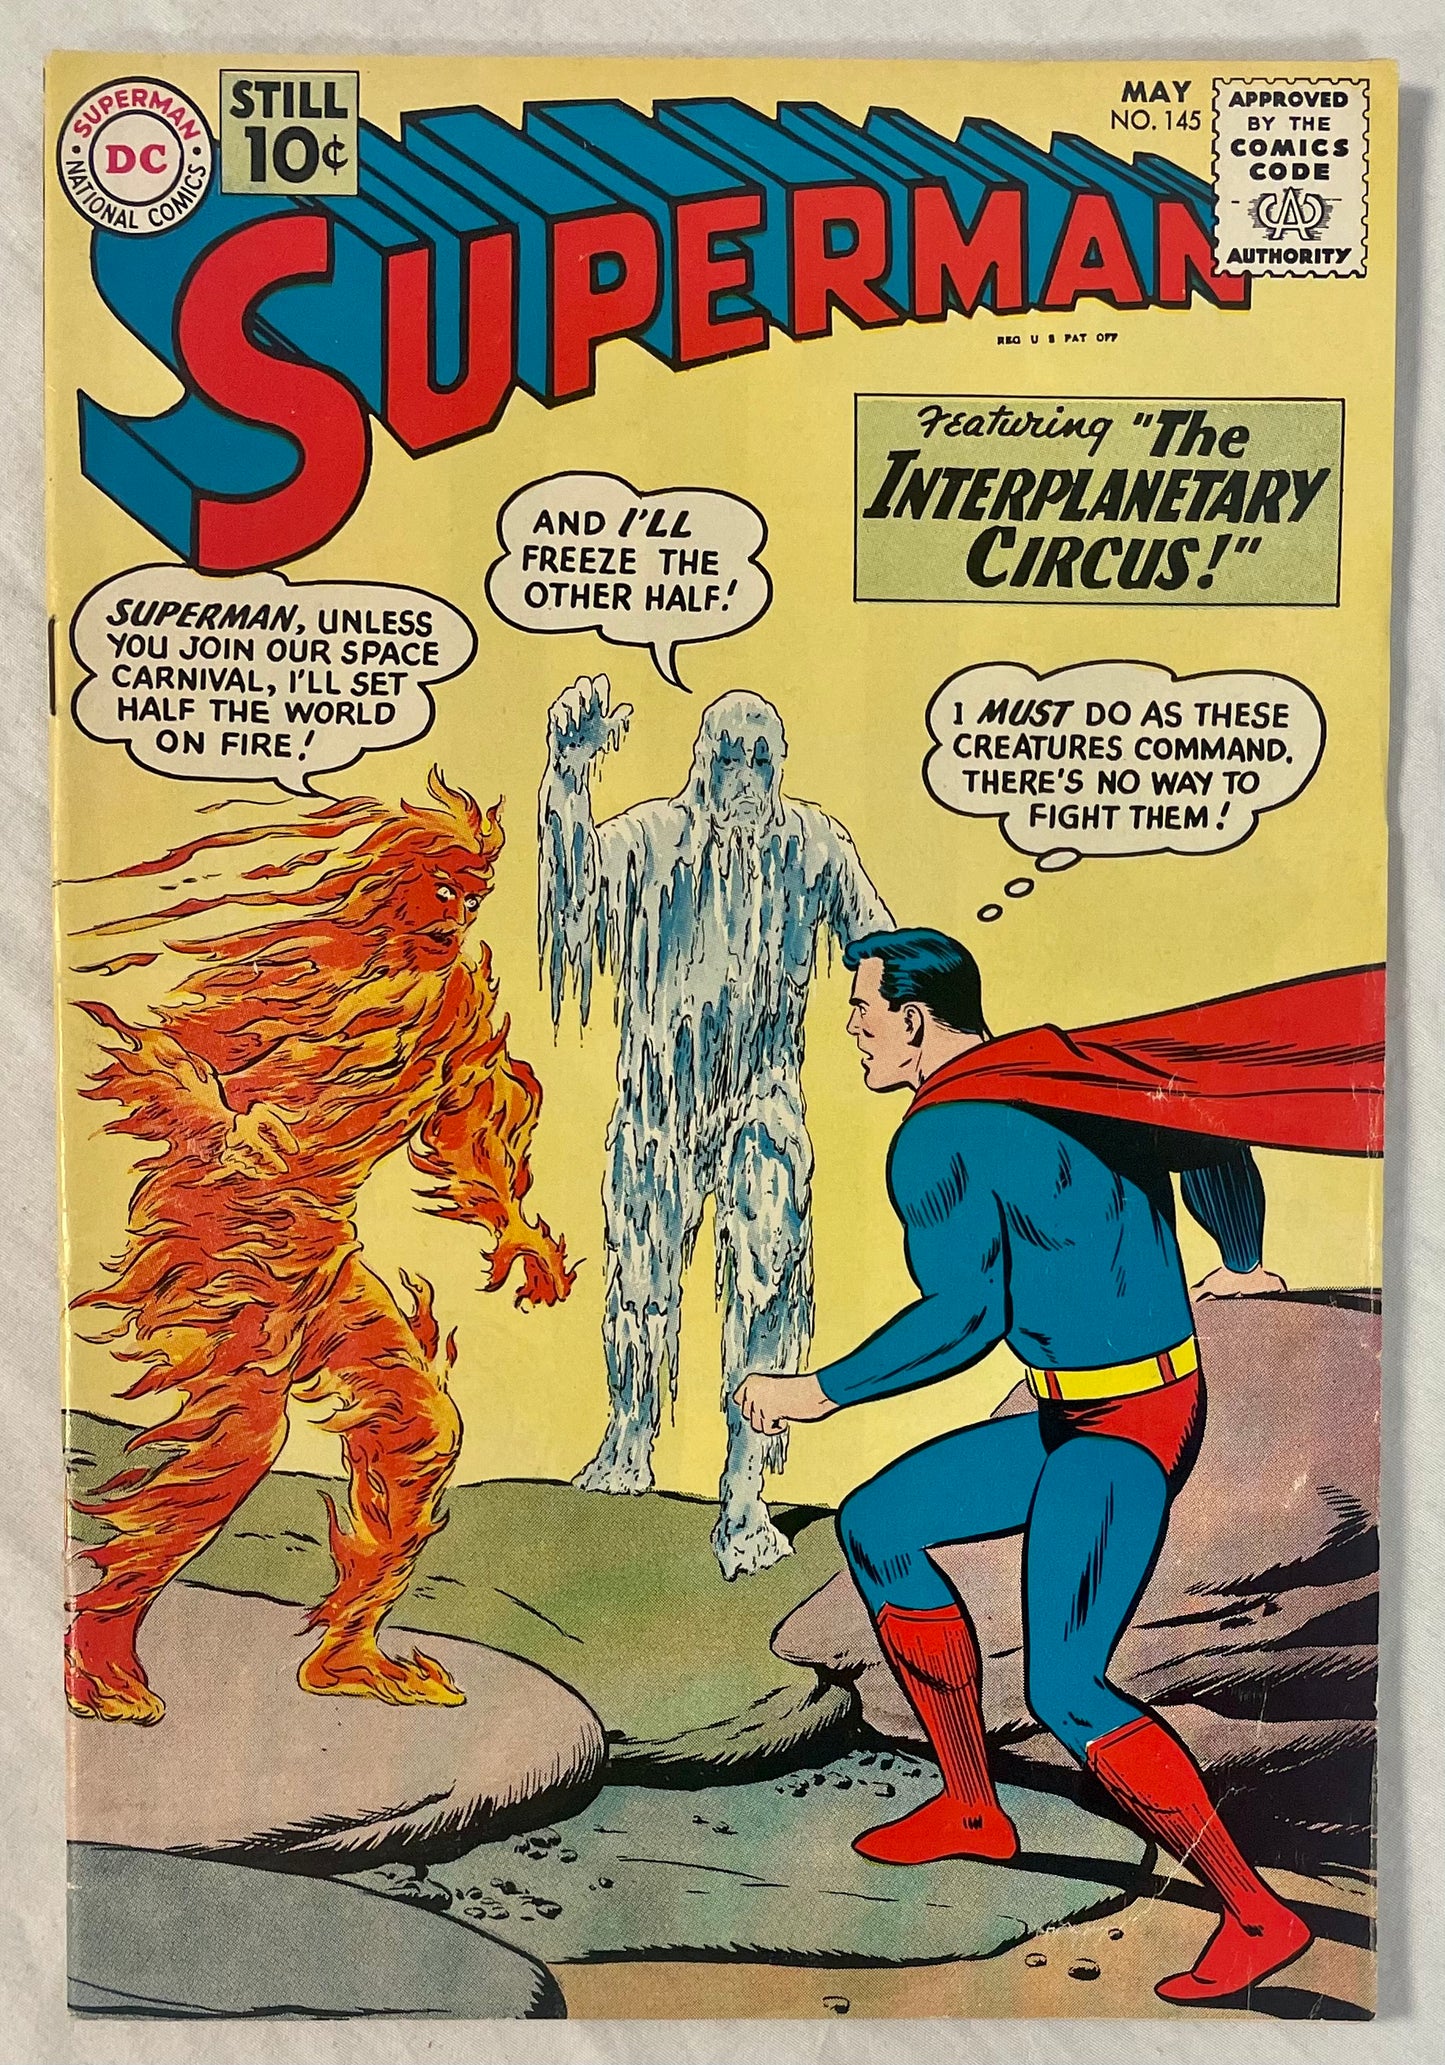 DC Comics Superman No.145